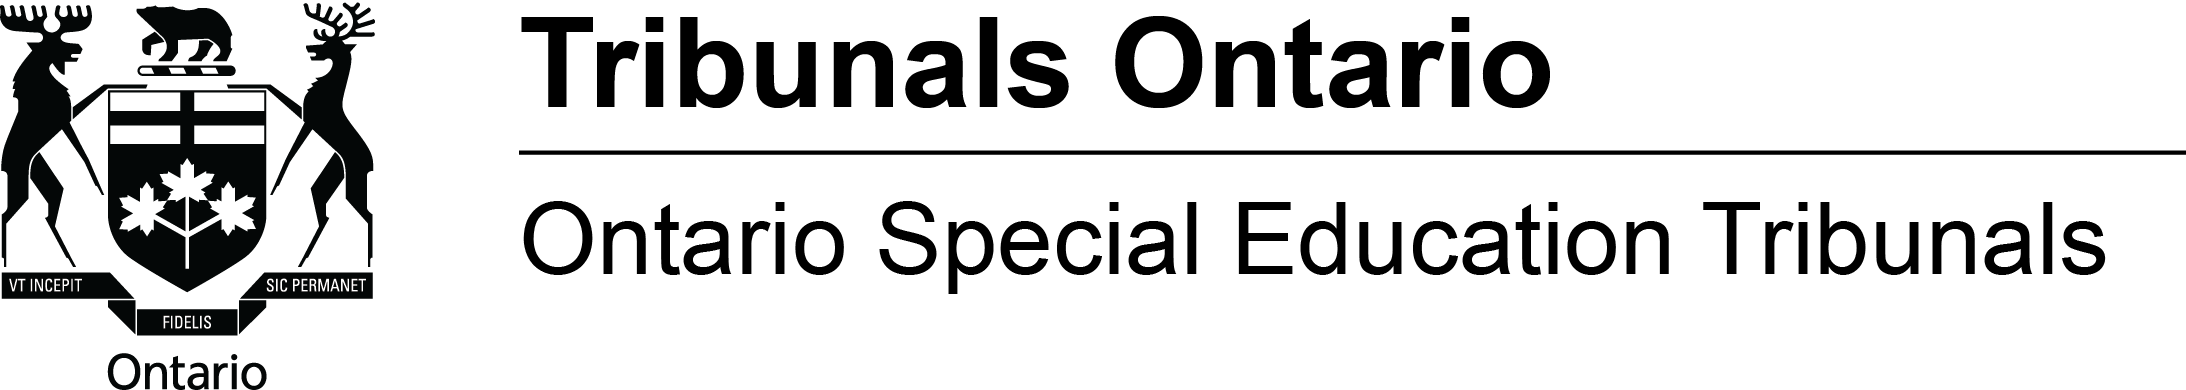 Ontario Special Education Tribunals logo